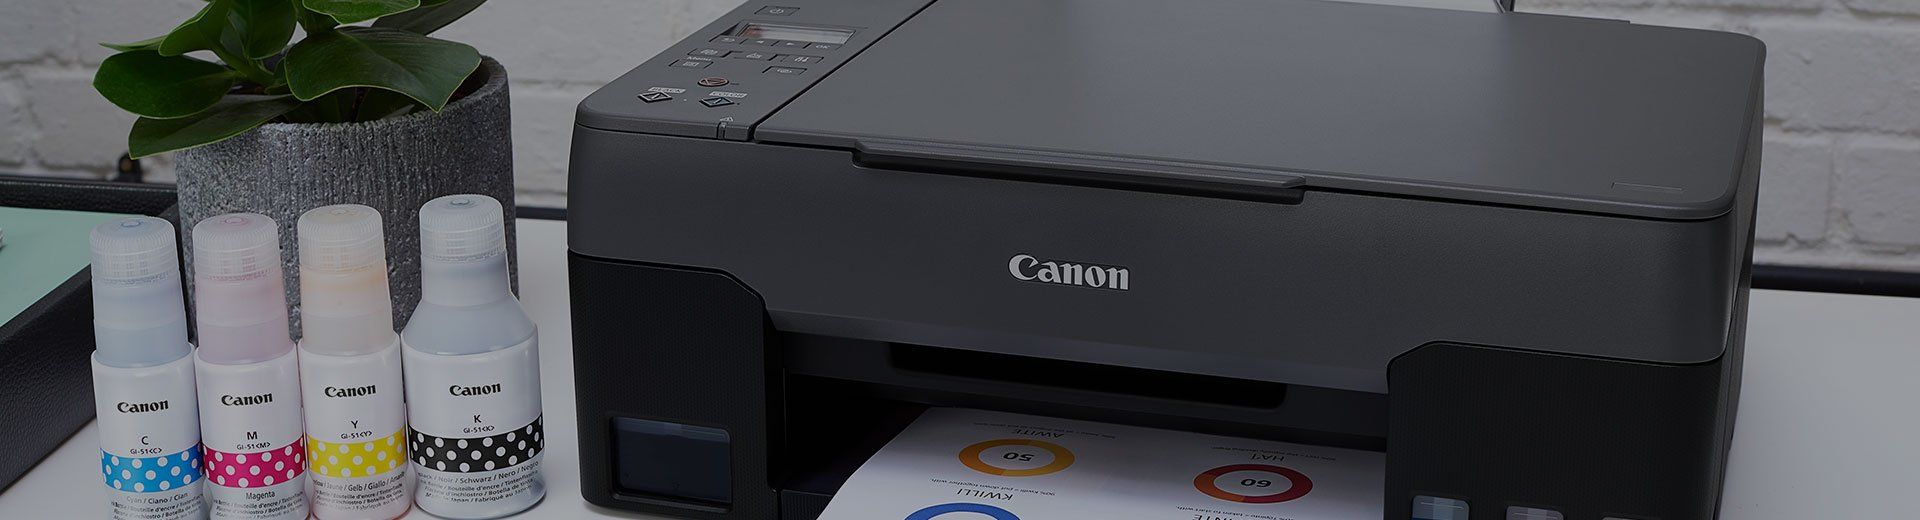 Canon Home Printers - Canon Ireland